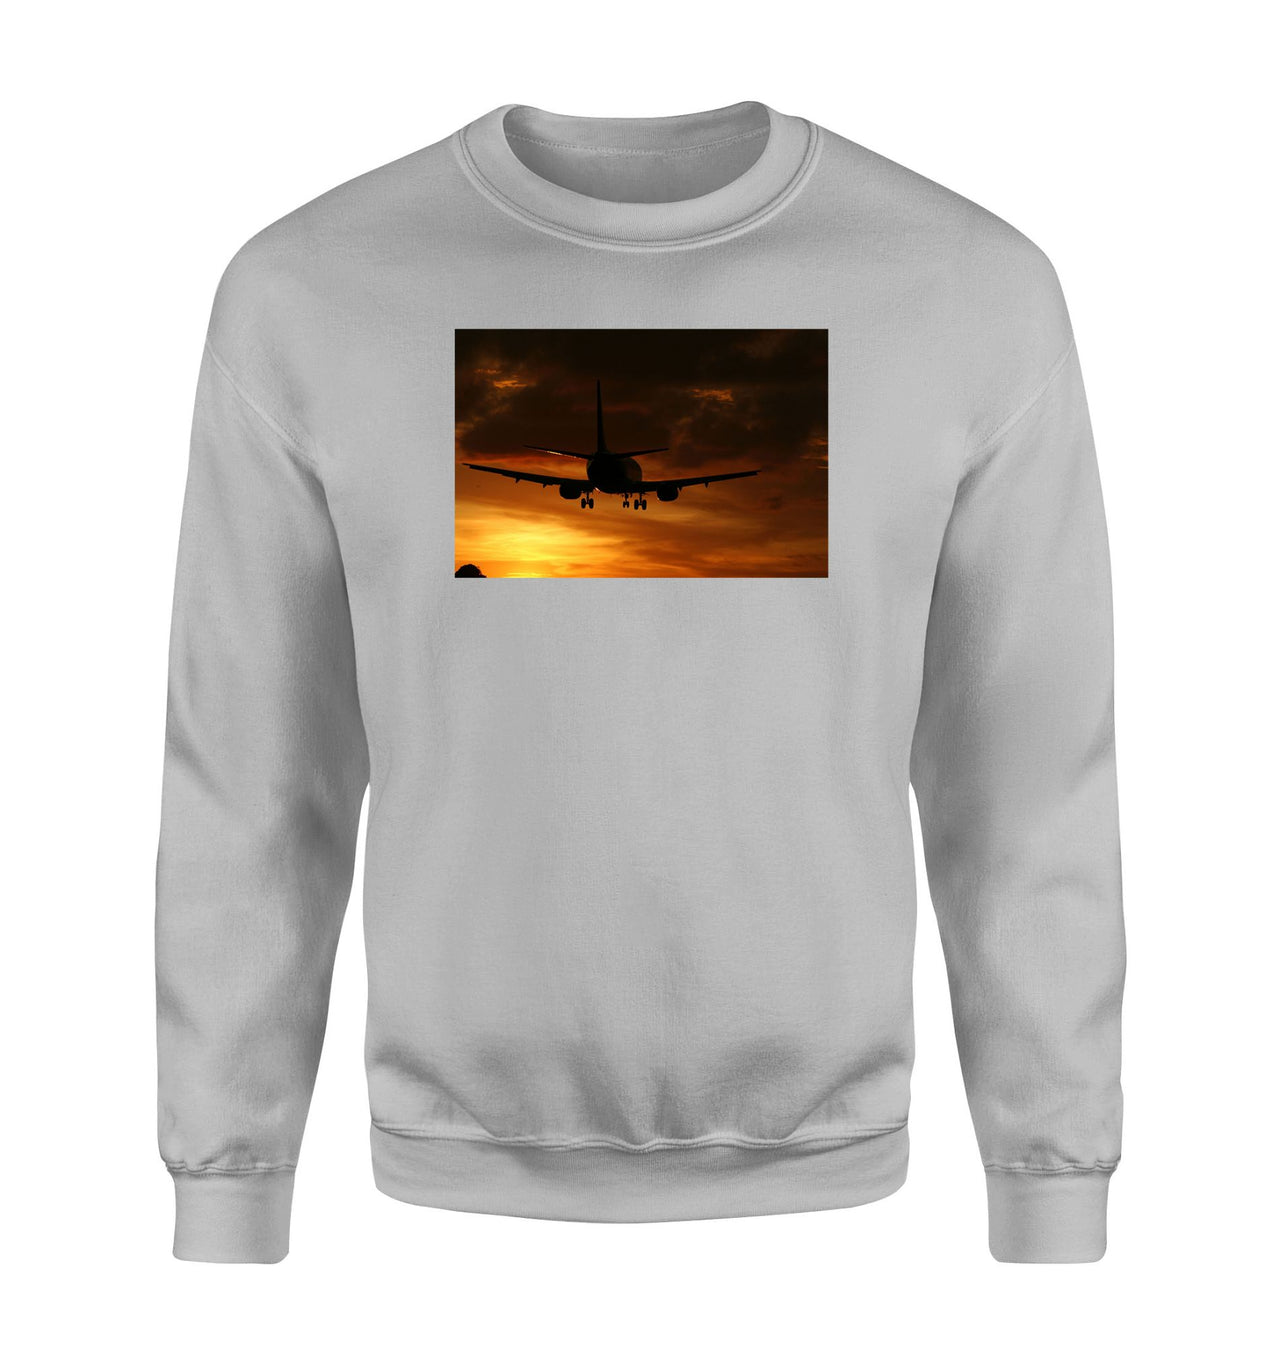 Beautiful Aircraft Landing at Sunset Designed Sweatshirts